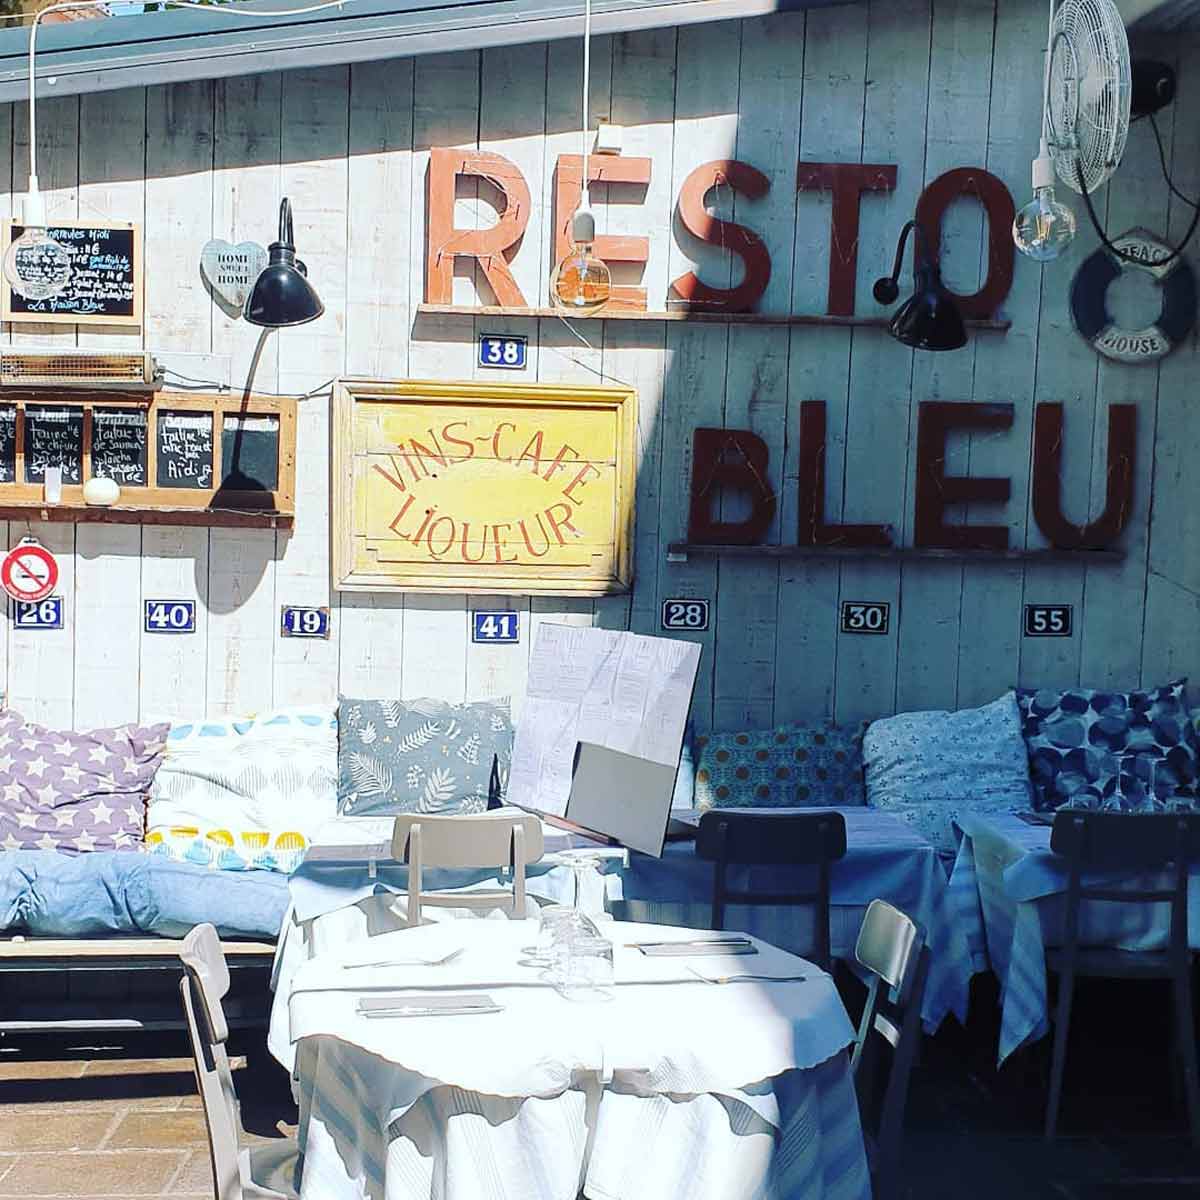 Restaurant La Maison Bleue